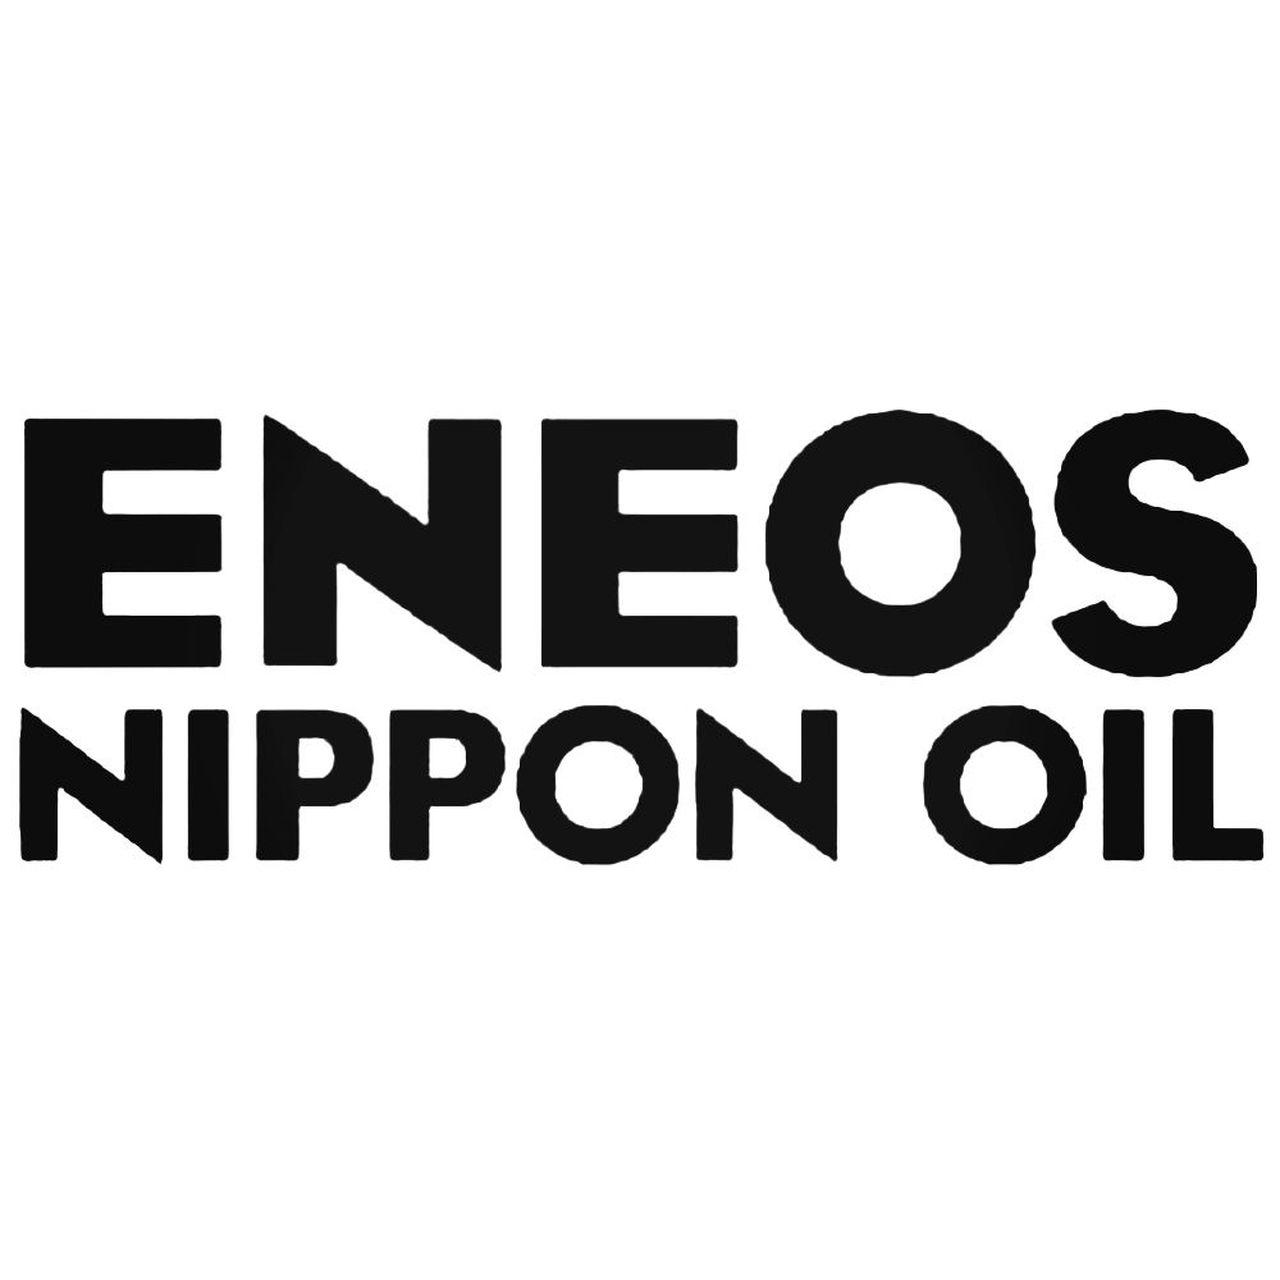 Eneos Logo - Eneos Nippon Oil S Vinl Car Graphics Decal Sticker